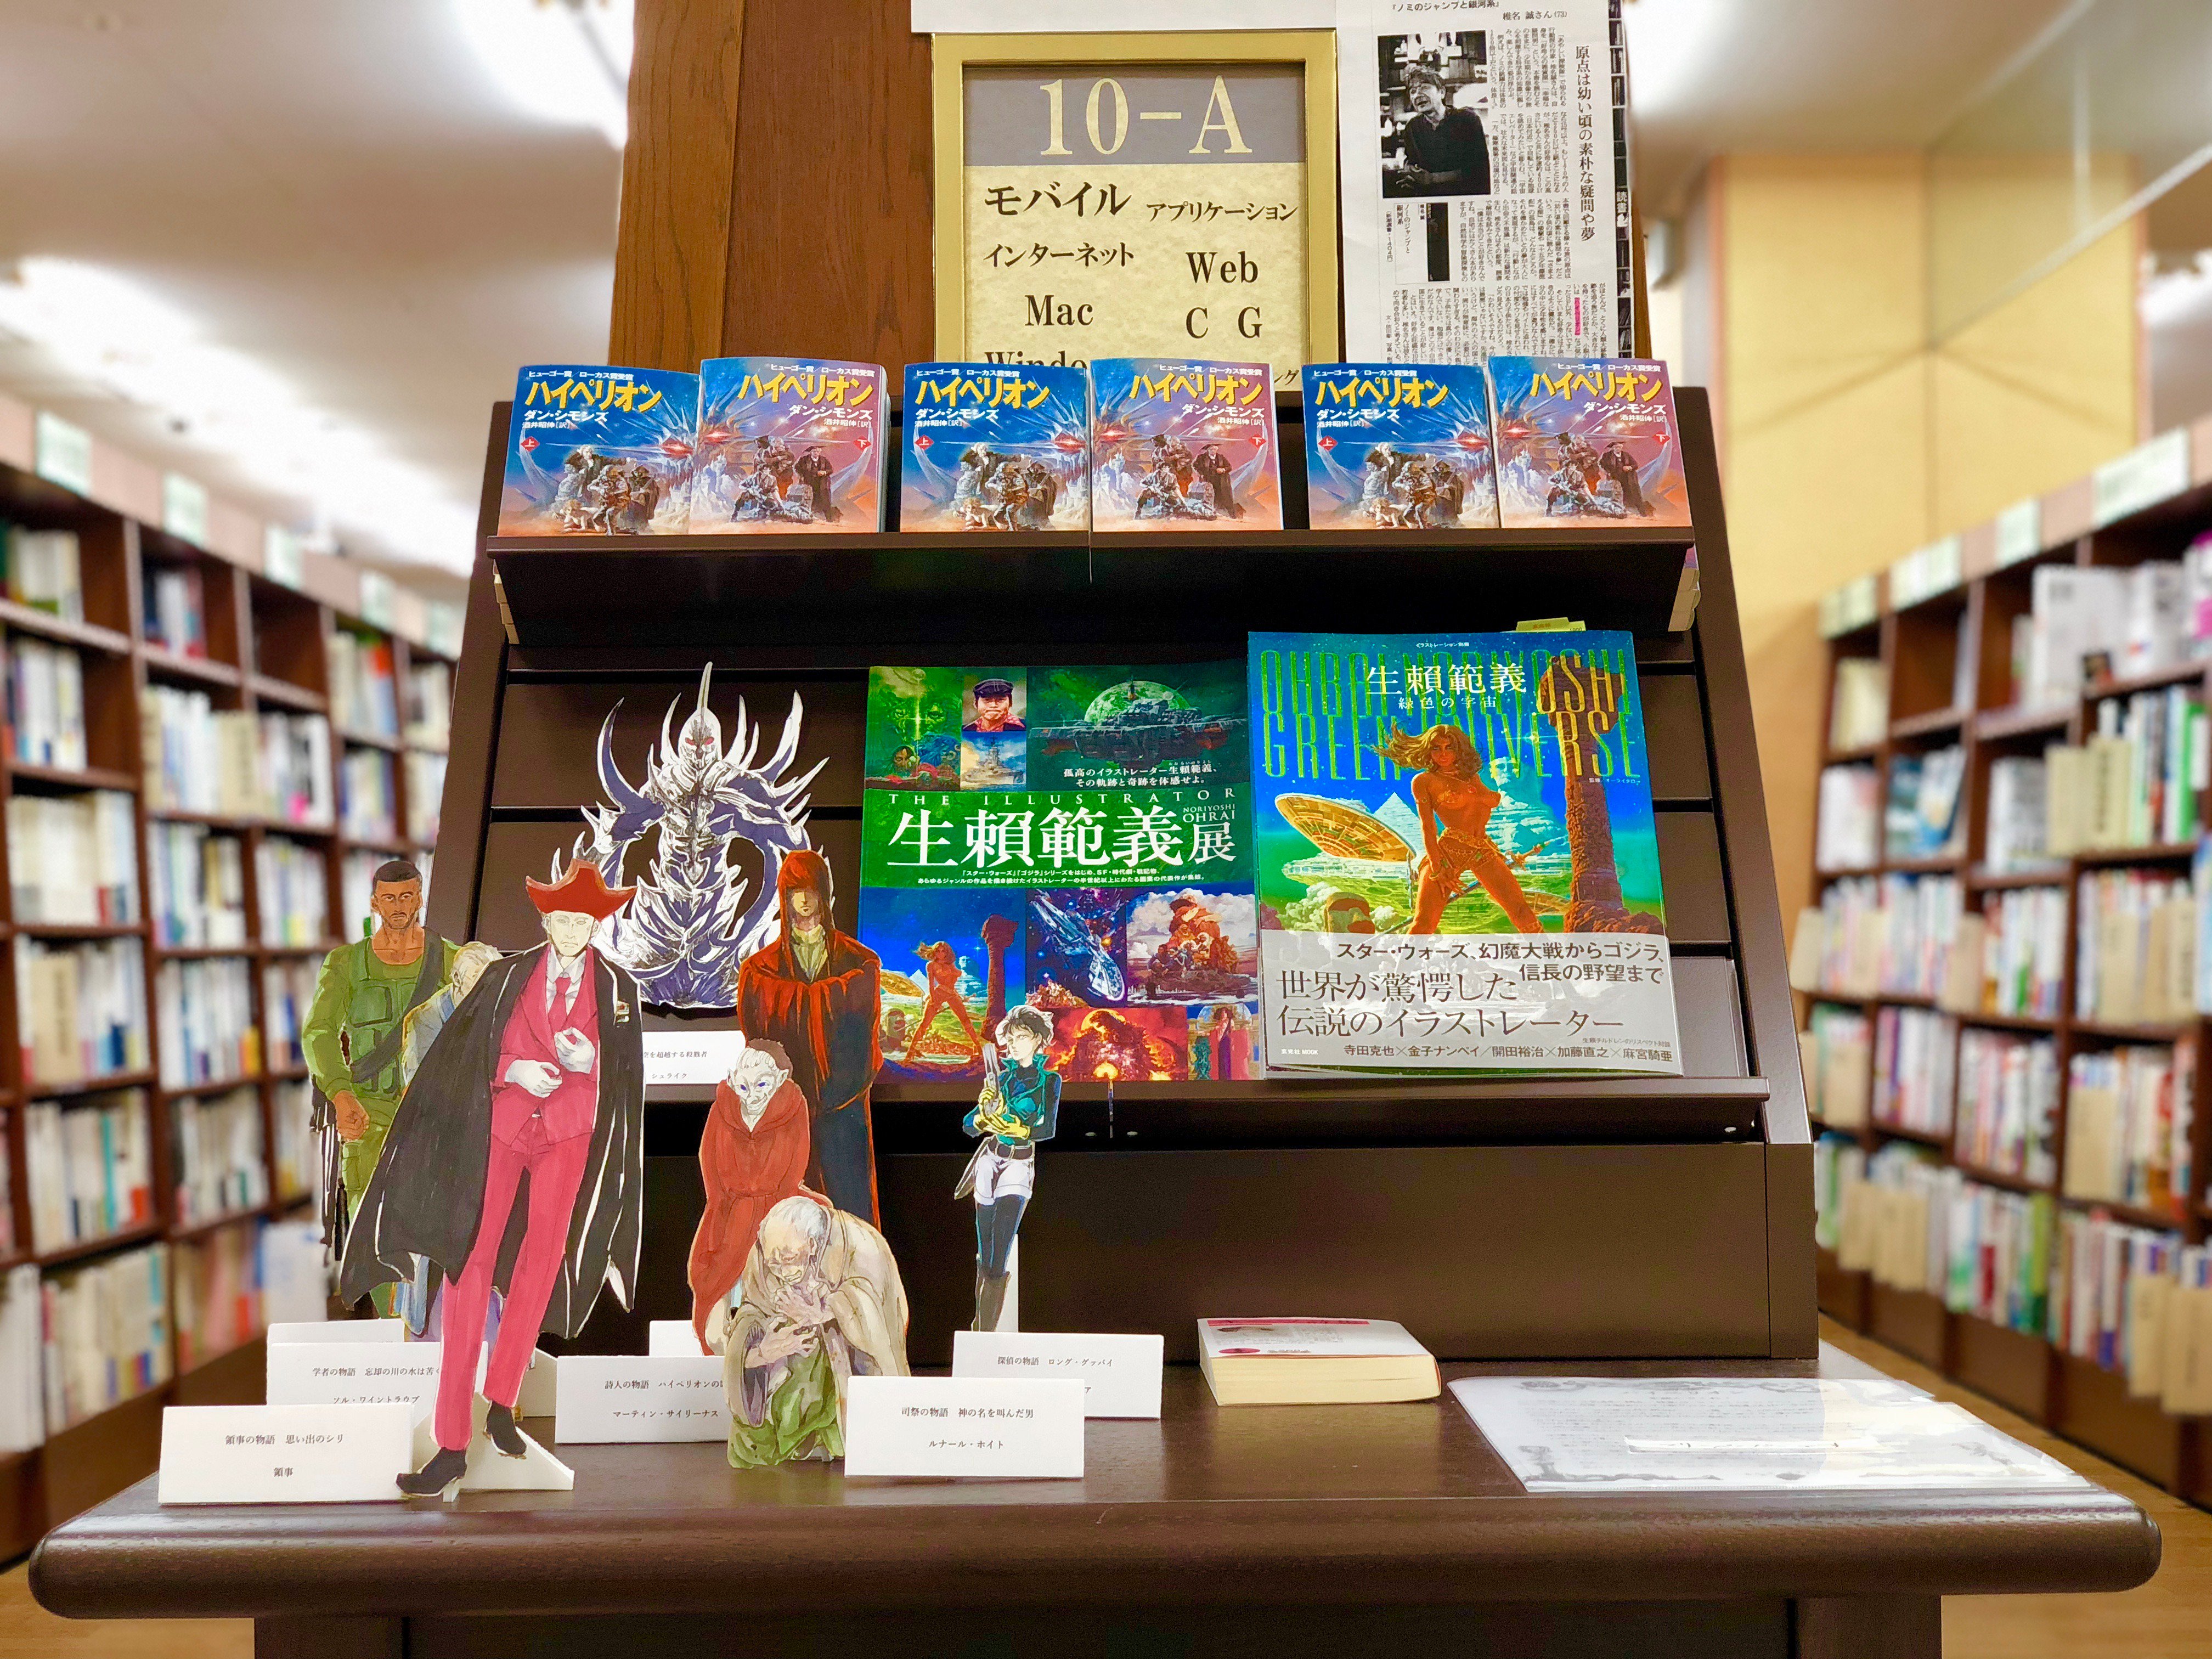 ジュンク堂書店西宮店 Sf小説 ハイペリオン フェアを開催中です ハイペリオンを愛する店員による ただただハイペリオンを読んで欲しいというだけのフェアです 登場キャラクターの イラストやフリーペーパーもあるので是非ご覧下さい 早川書房